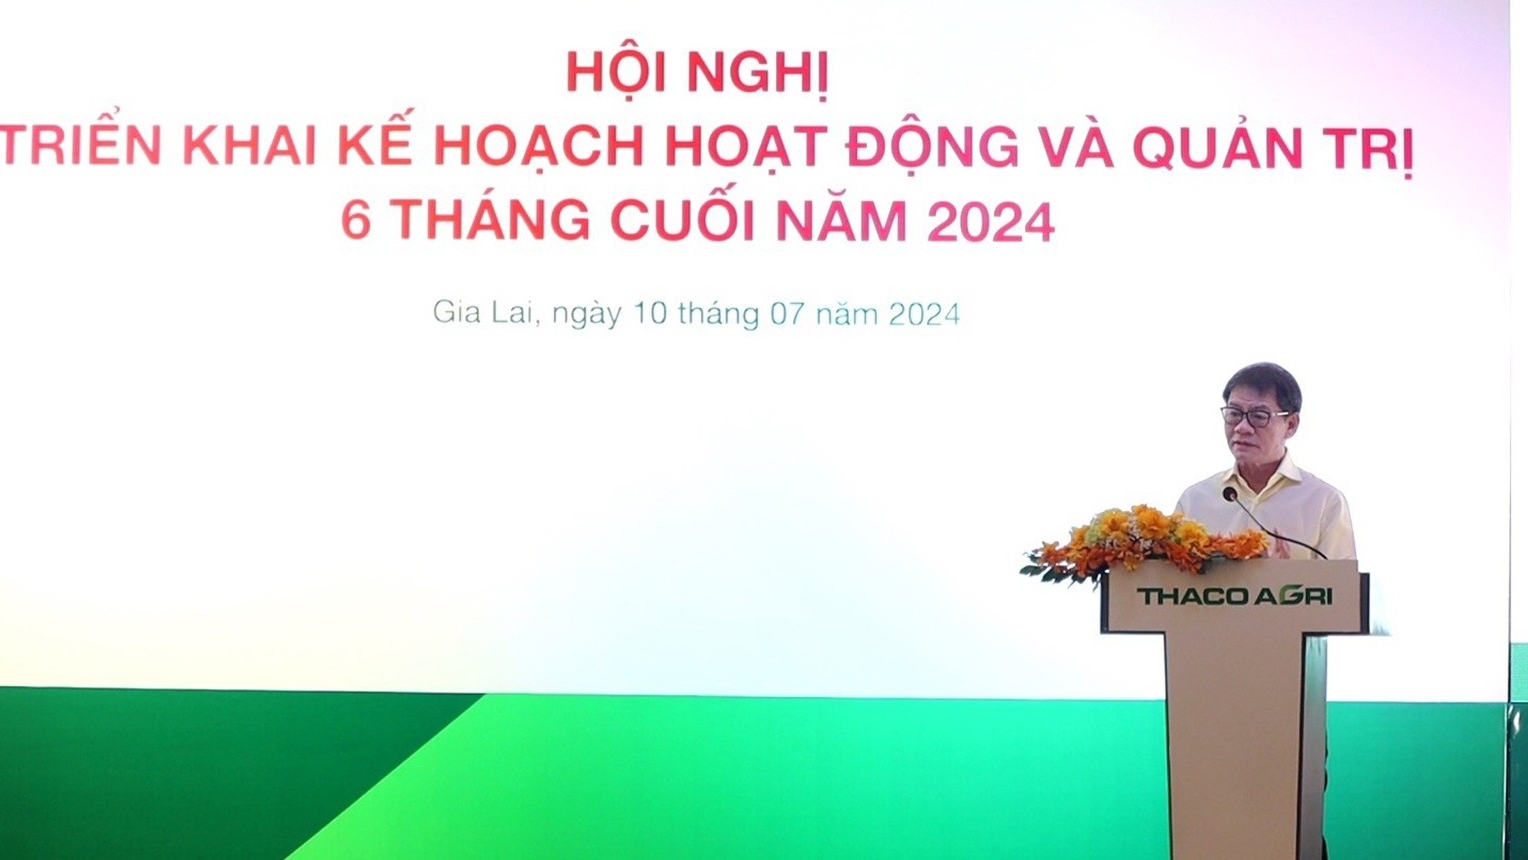 THACO AGRI tổ chức Hội nghị Triển khai kế hoạch hoạt động và quản trị 6 tháng cuối năm 2024